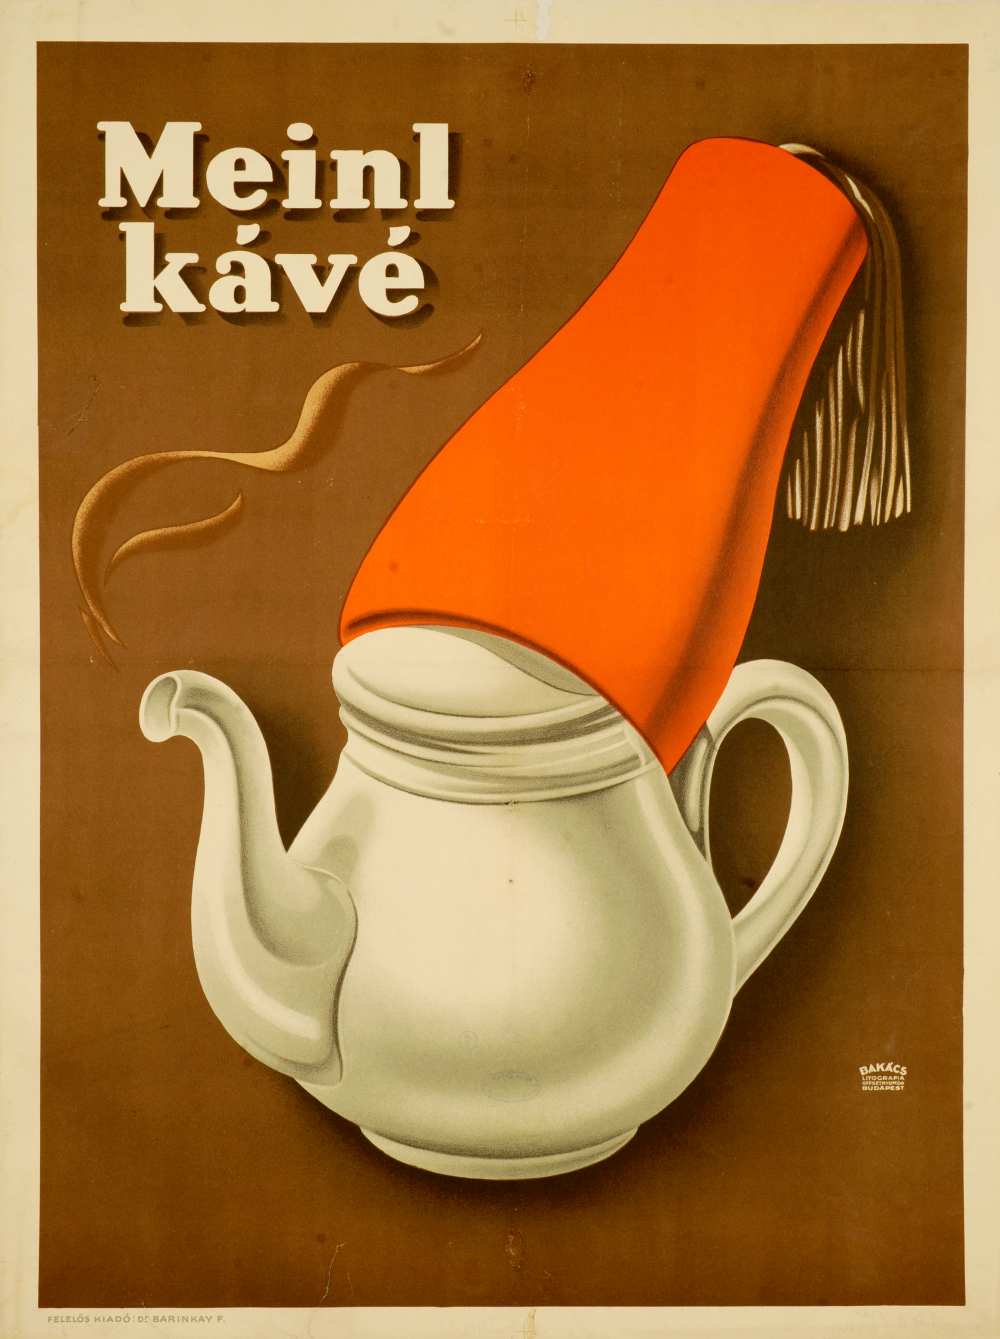 Meinl kávé. Jelzet: PKG.én/45. - Térkép-, Plakát- és Kisnyomtatványtár https://nektar.oszk.hu/hu/manifestation/2768635<br />